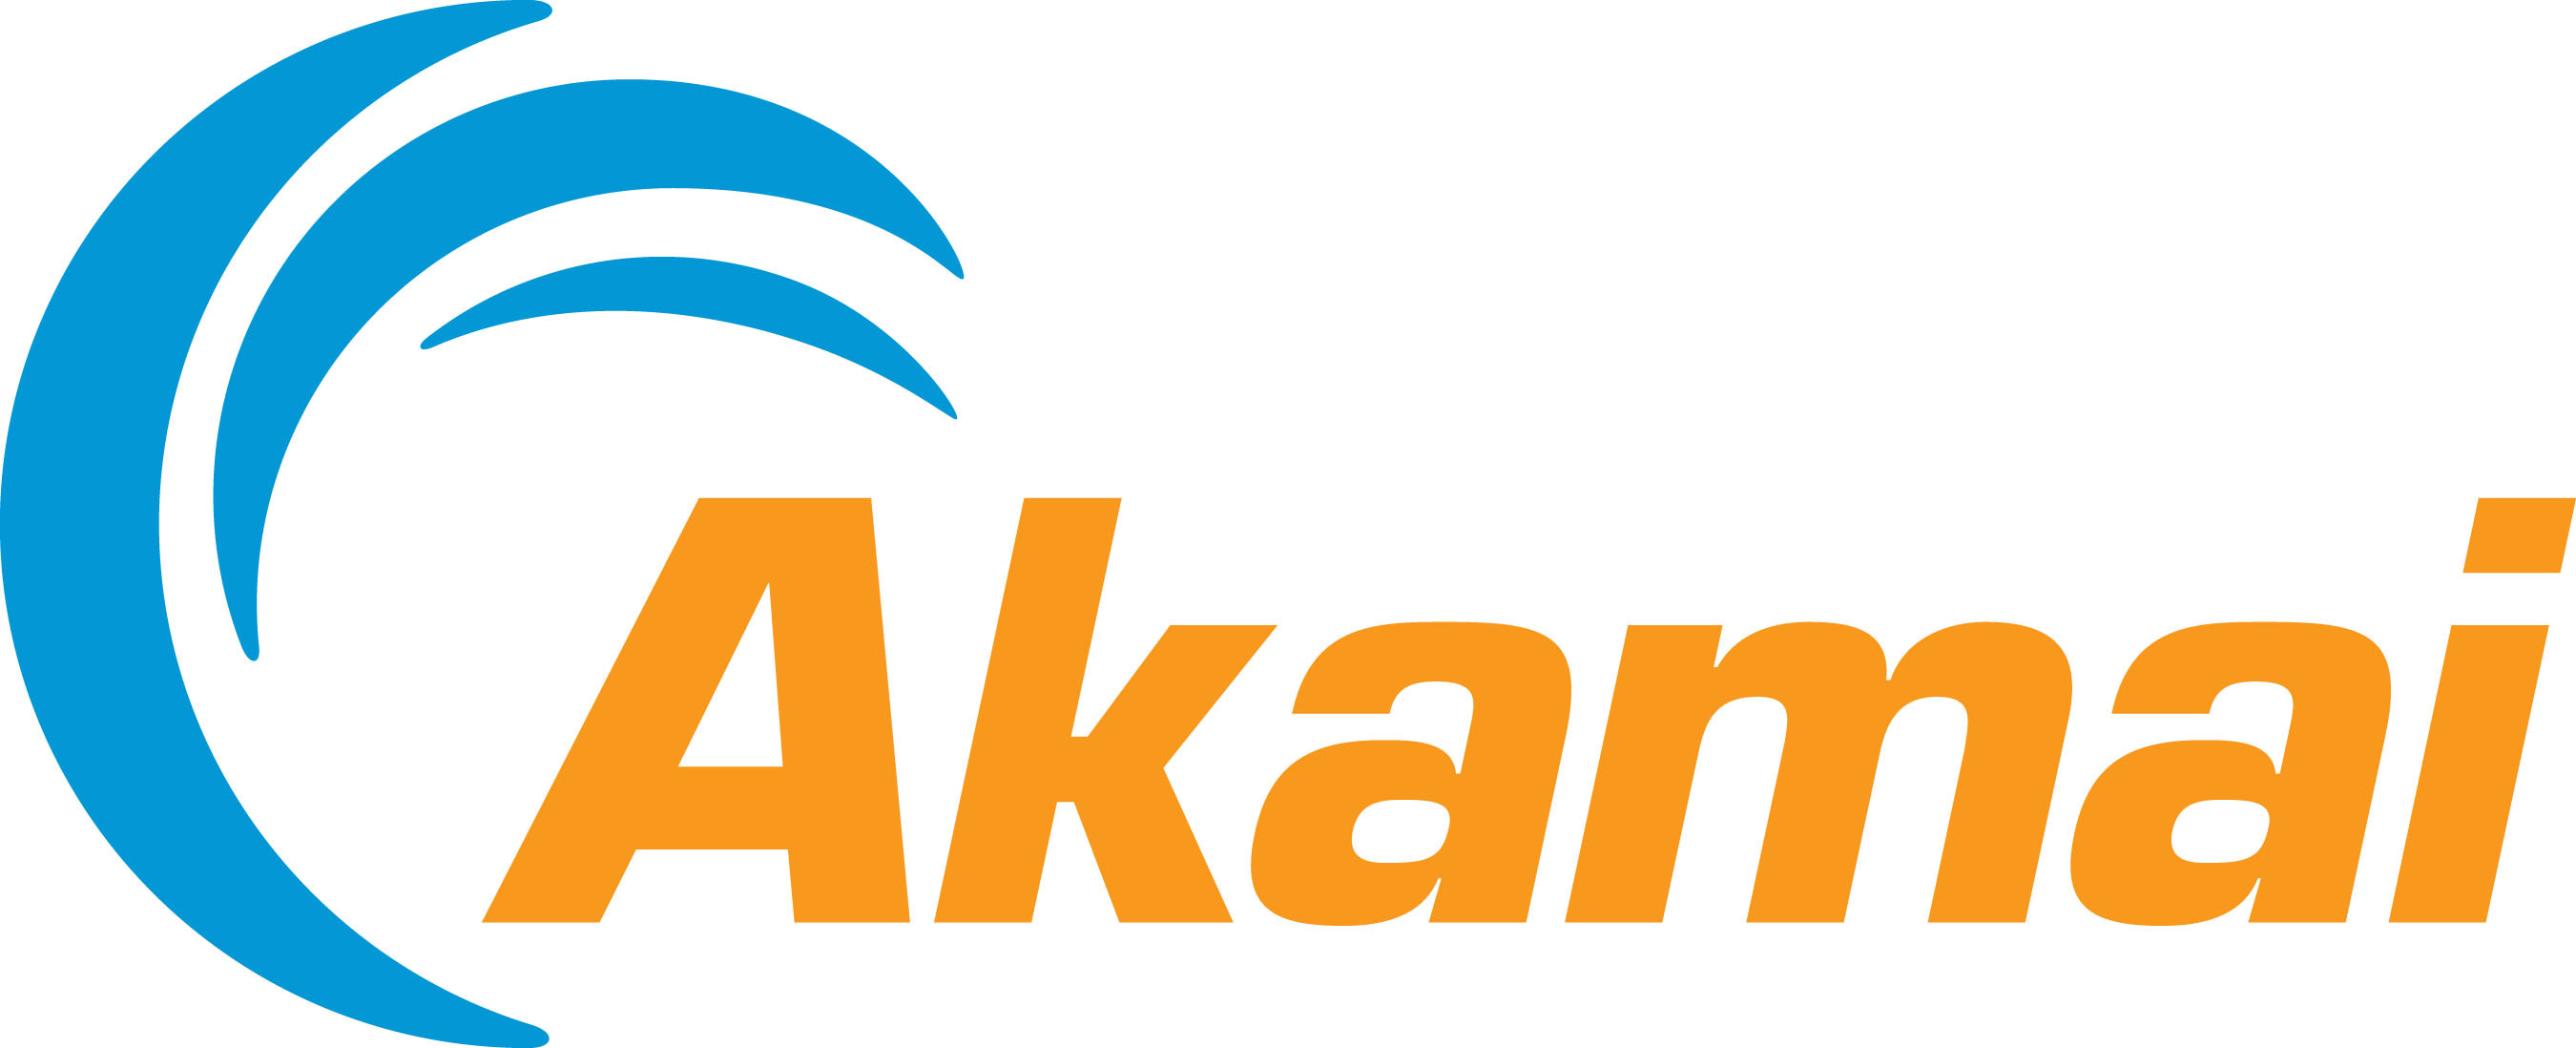 Akamai Technologies logo. (PRNewsFoto/AKAMAI TECHNOLOGIES) (PRNewsFoto/Akamai Technologies, Inc.)